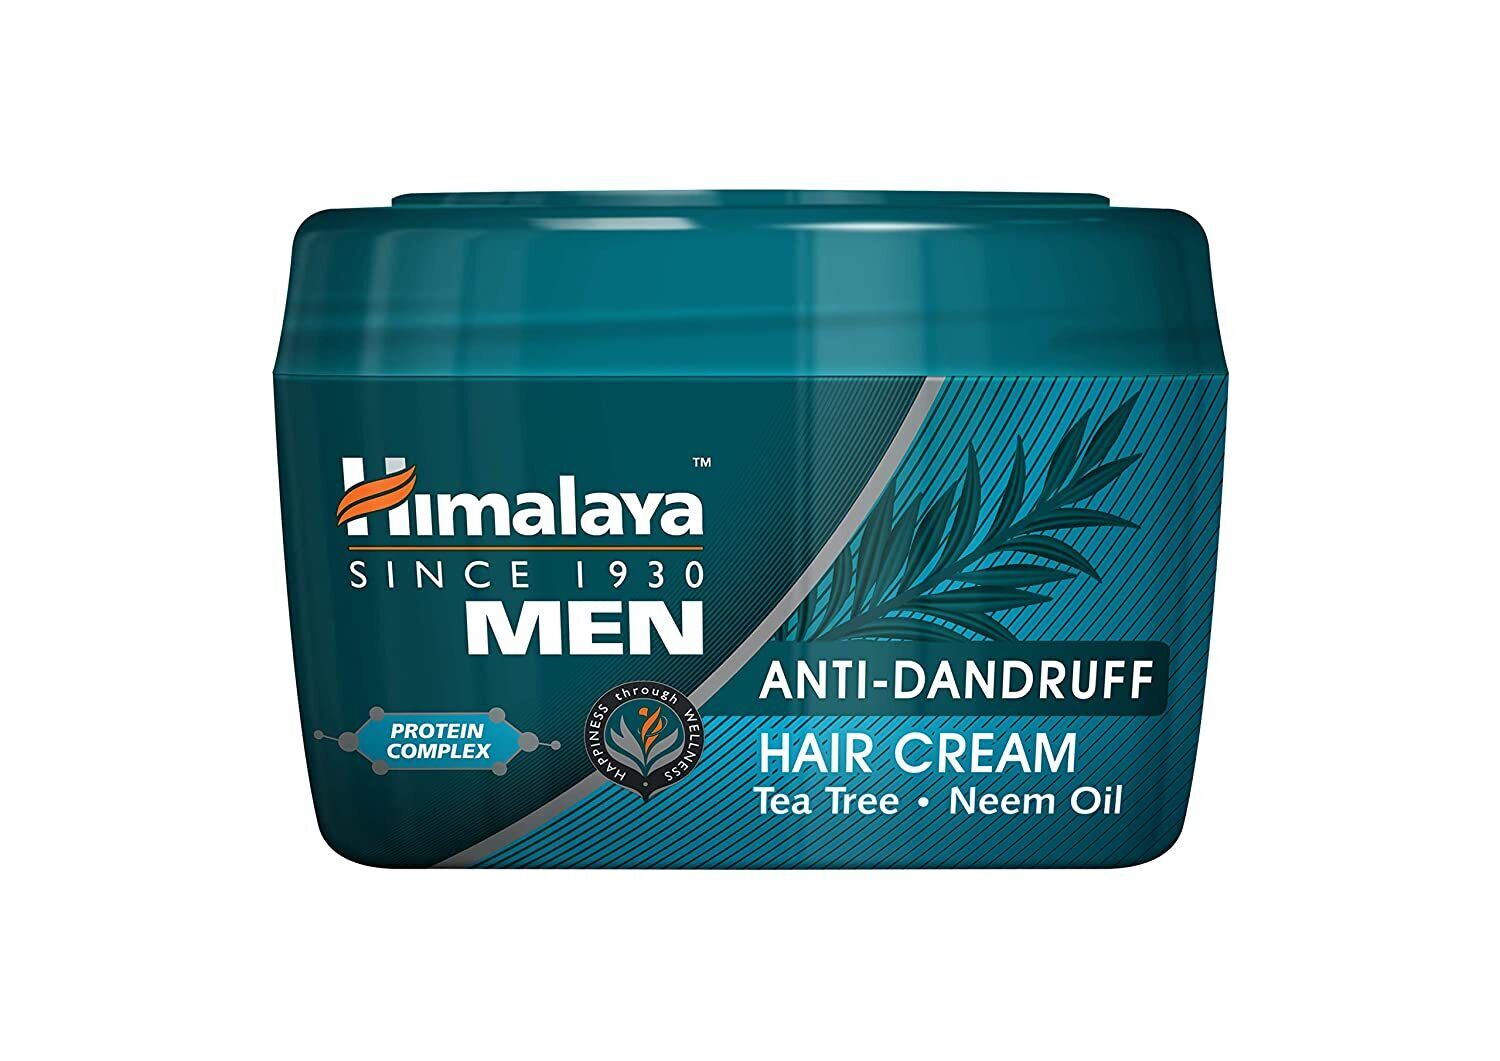 Himalaya Himalaya Men Anti Dandruff Hair Cream, 100 gram -Pack Of 2 | eBay